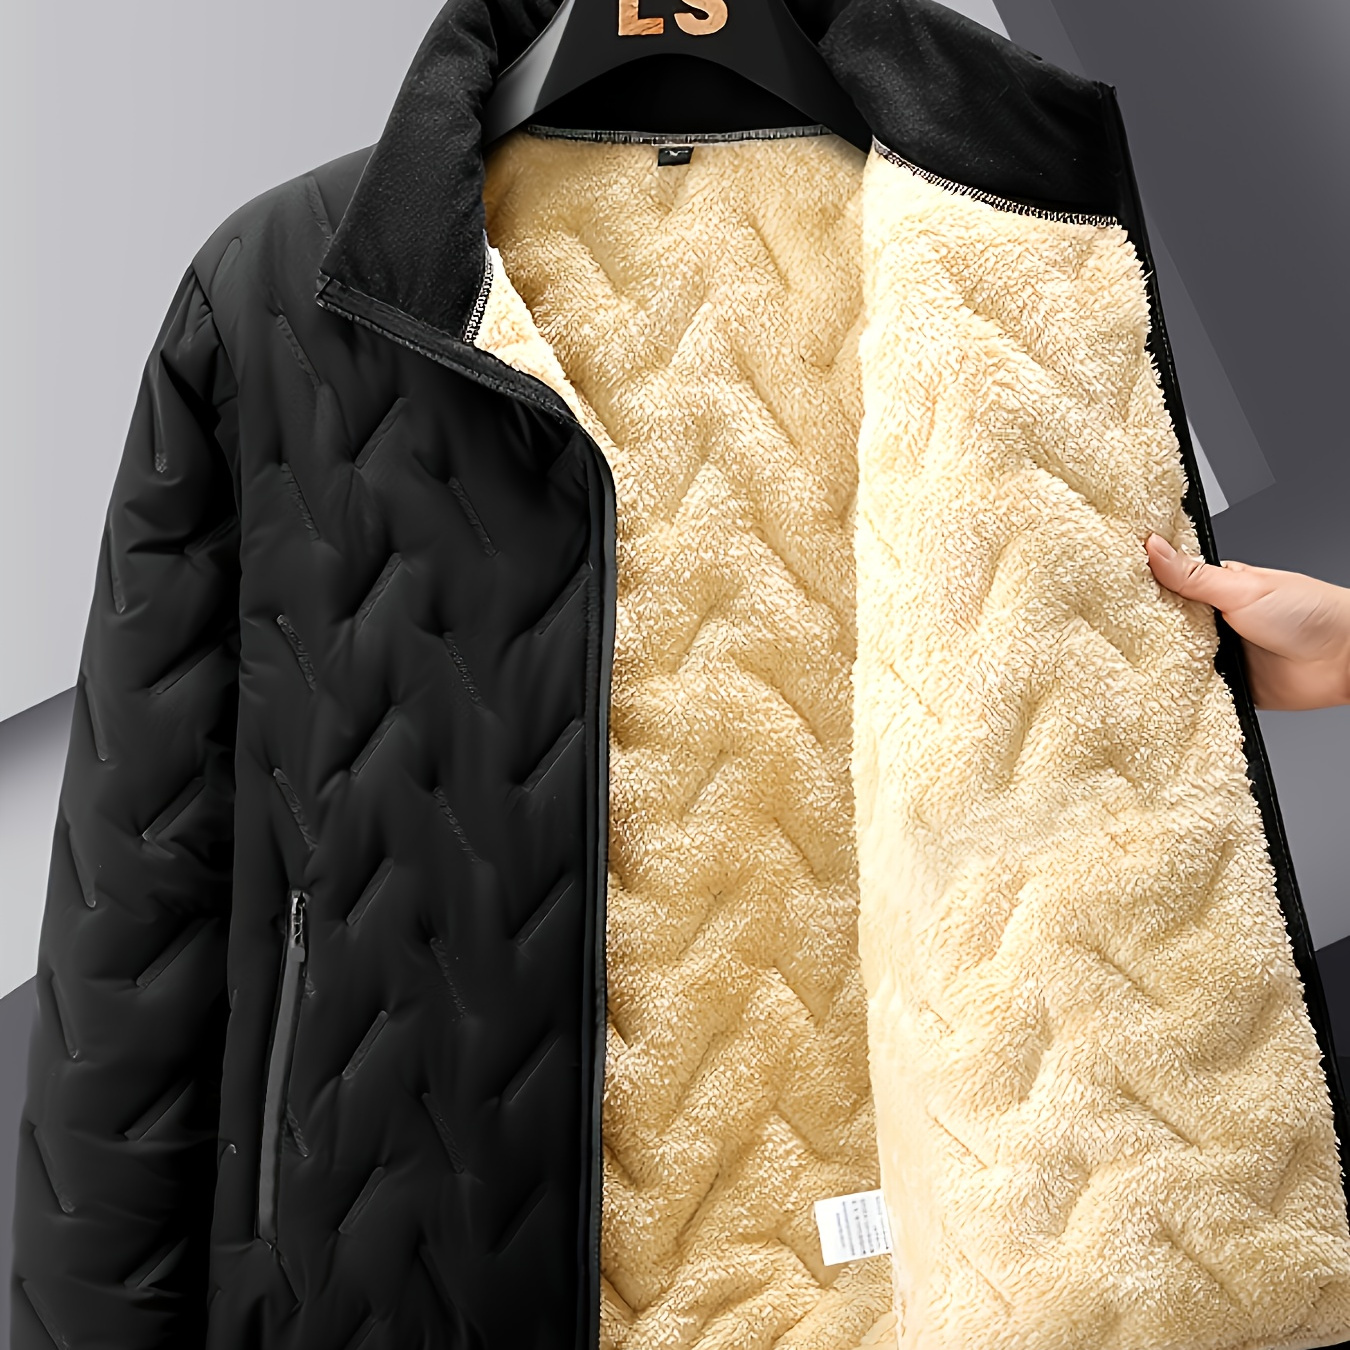 

Men's Casual Warm Quilted Jacket With Zipper Pockets, Sherpa Fleece Windbreaker Jacket For Fall Winter